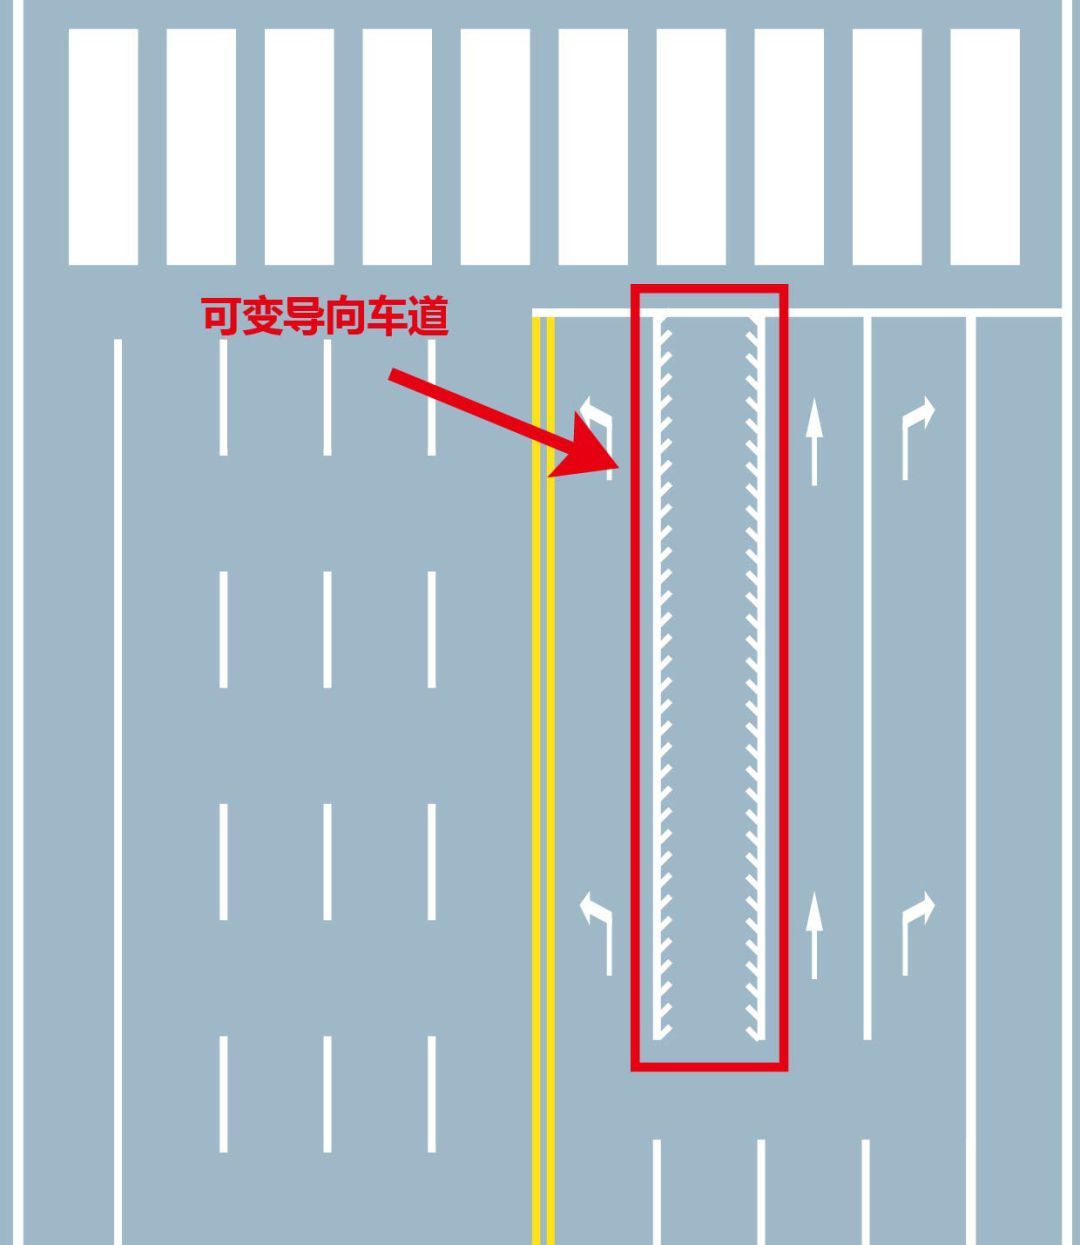 可变导向车道3所以司机朋友出行,需要提前了解并辨别减速标线的标识